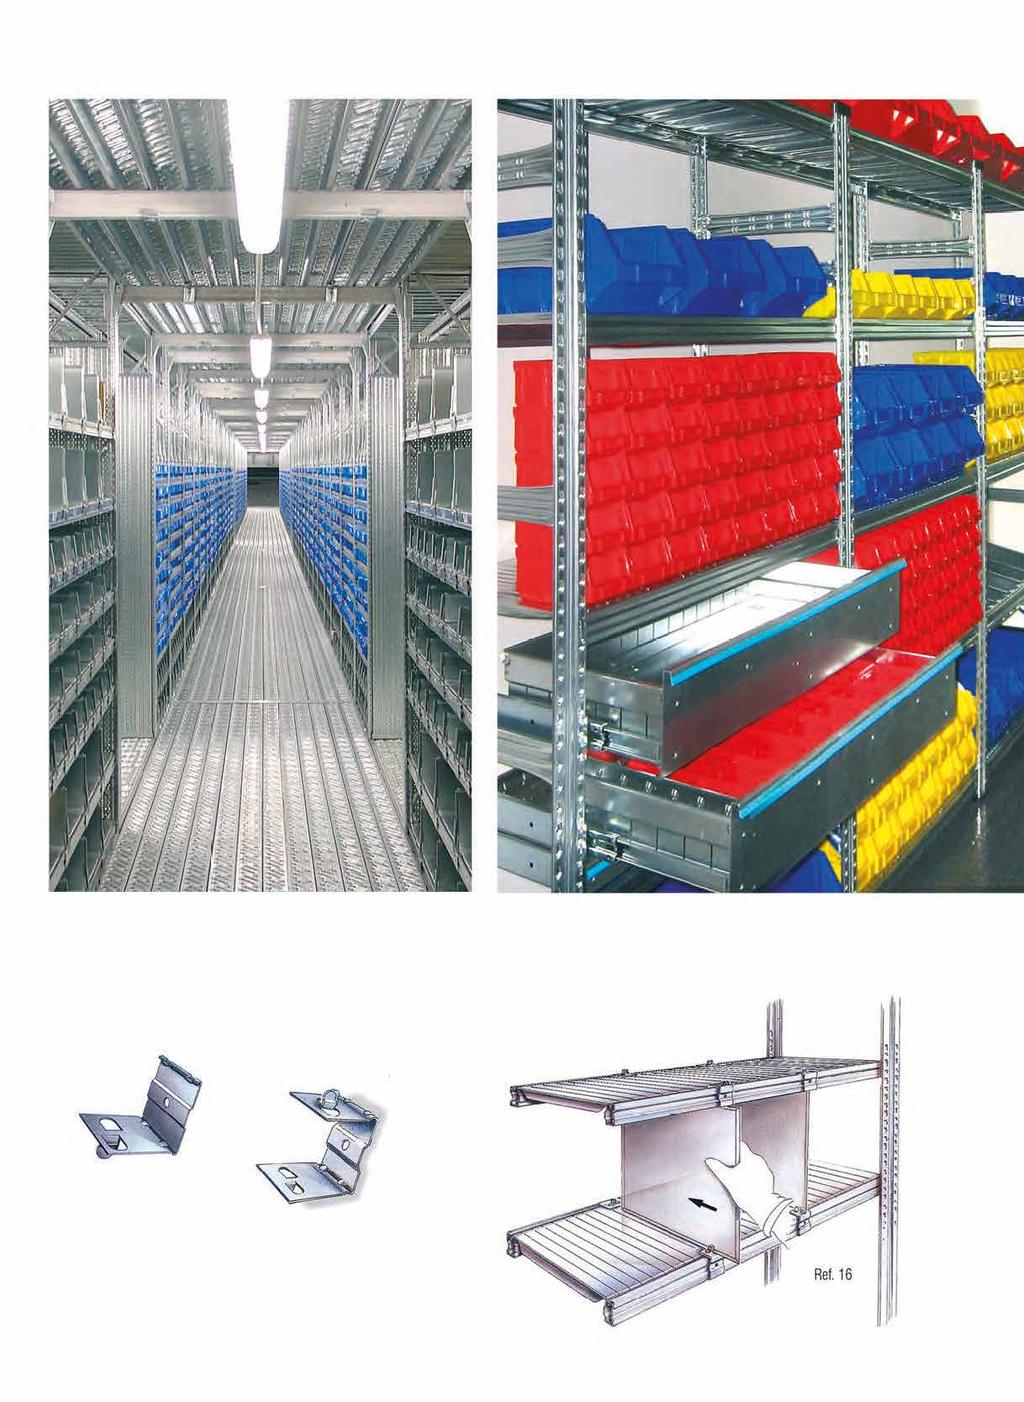 CAIXAS EM PVC SÉRIE BULL Caixas em PVC com abertura frontal, estão também disponíveis, para armazenagem de pequenos artigos.